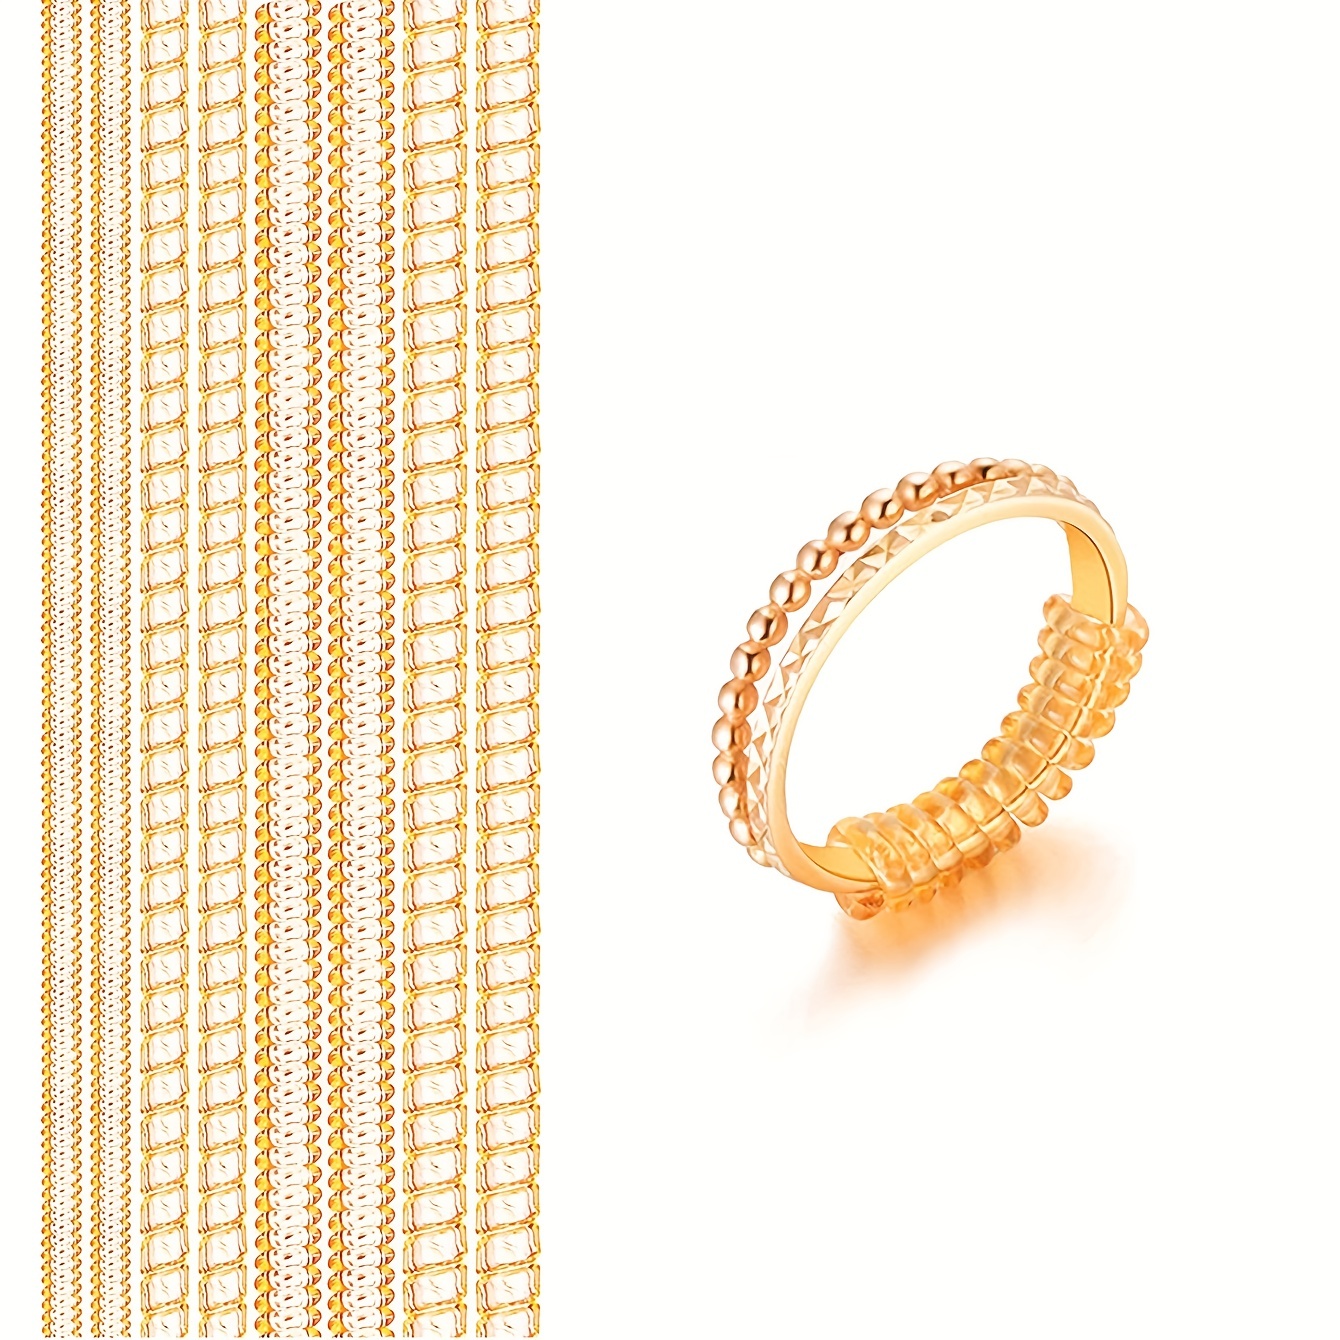 Ajustador de tamaño de anillo para anillos sueltos, paquete de 12 a 4  tamaños, se adapta a todos los tamaños de anillos, tensor de anillo,  anillos